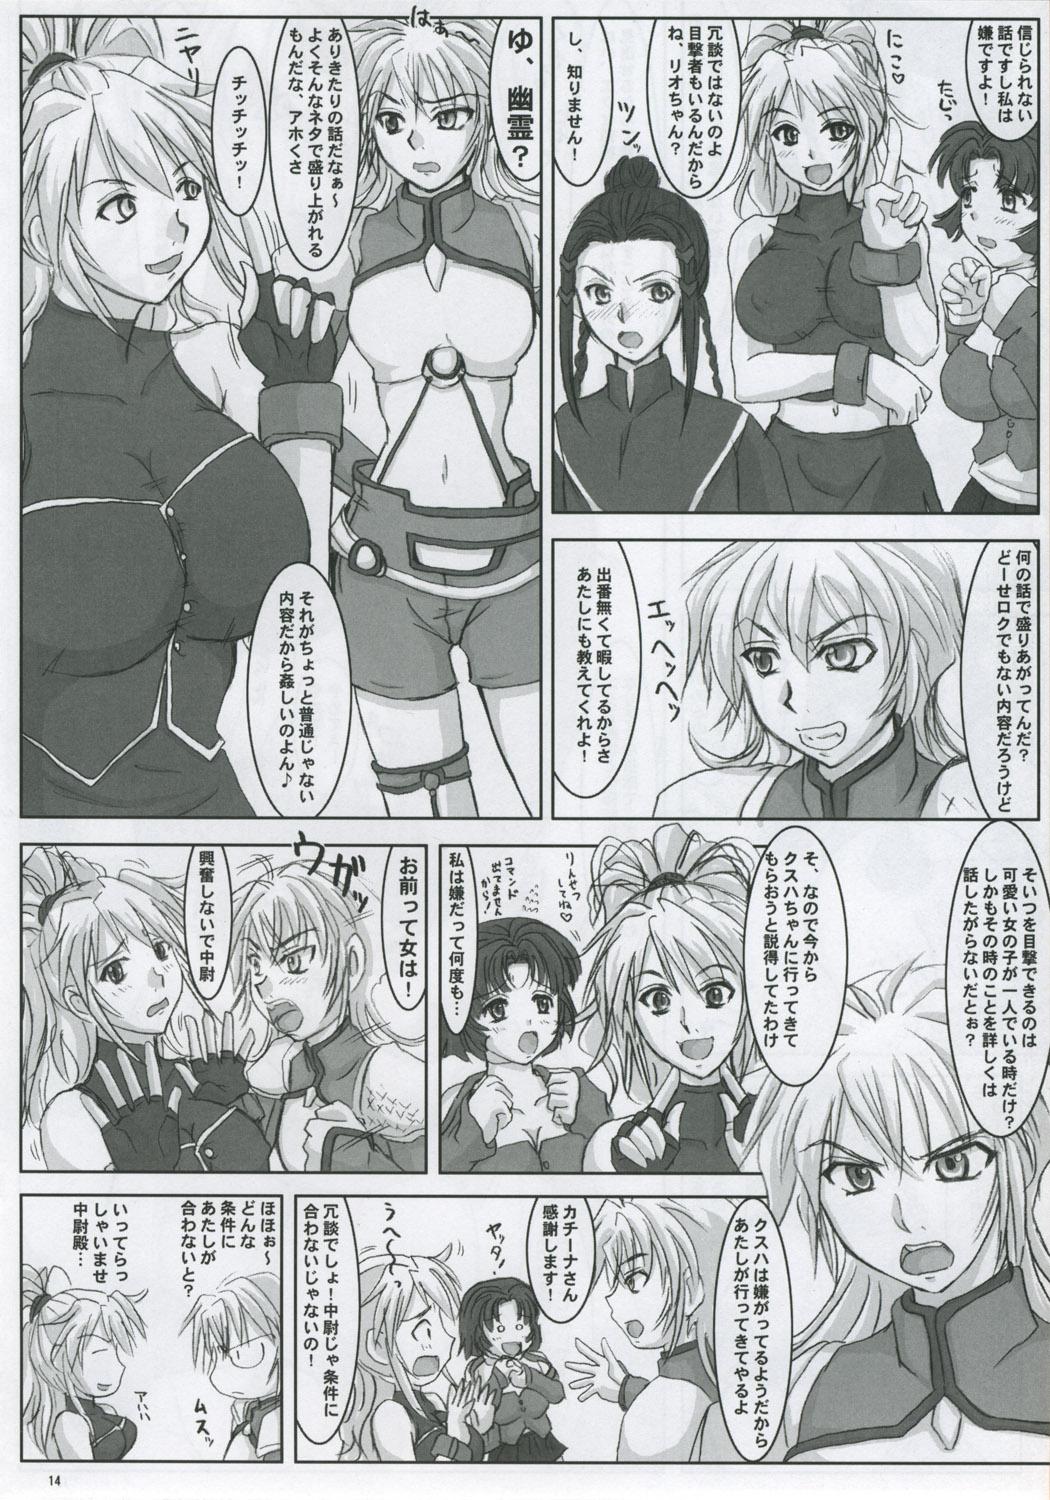 Nylons Yumemiru Heishija Irarenai! - Super robot wars Publico - Page 13